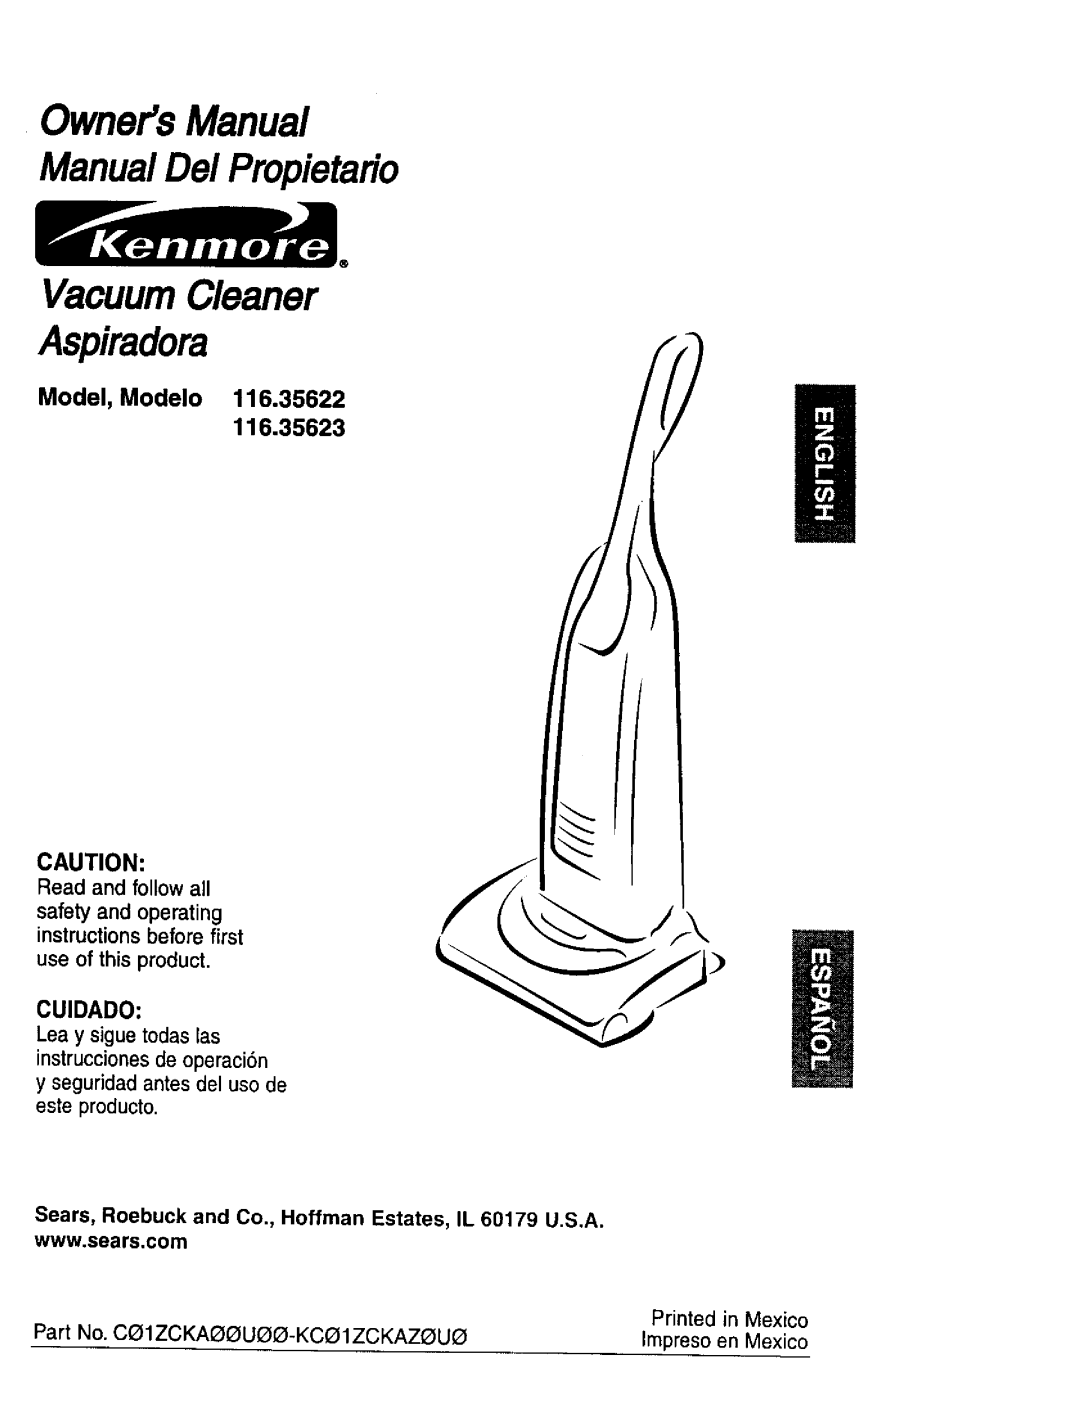 Kenmore 116.35623 owner manual Model, Modelo 116.35622, OwnersManual ManualDe/Propietario, VacuumCleaner, Aspiradora 